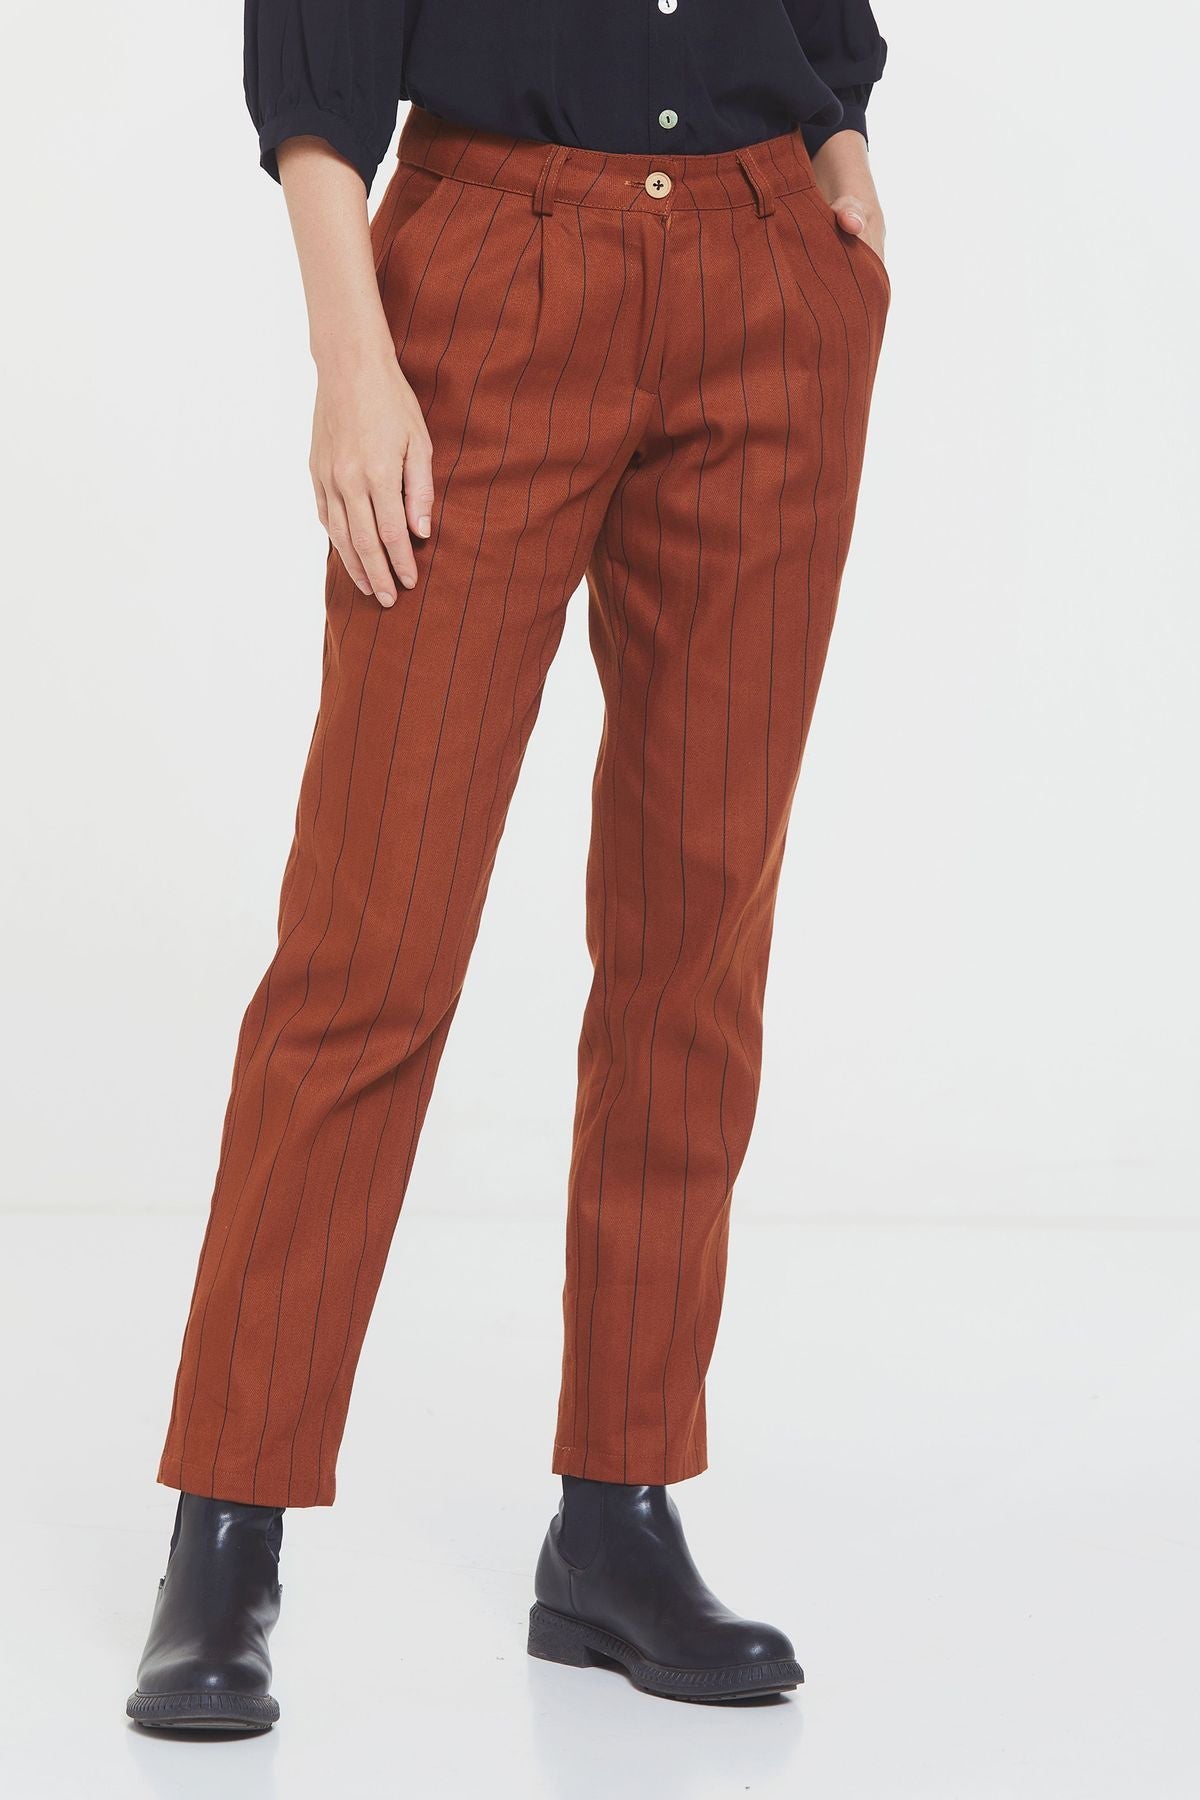 Women's Striped Cotton Pants Orange